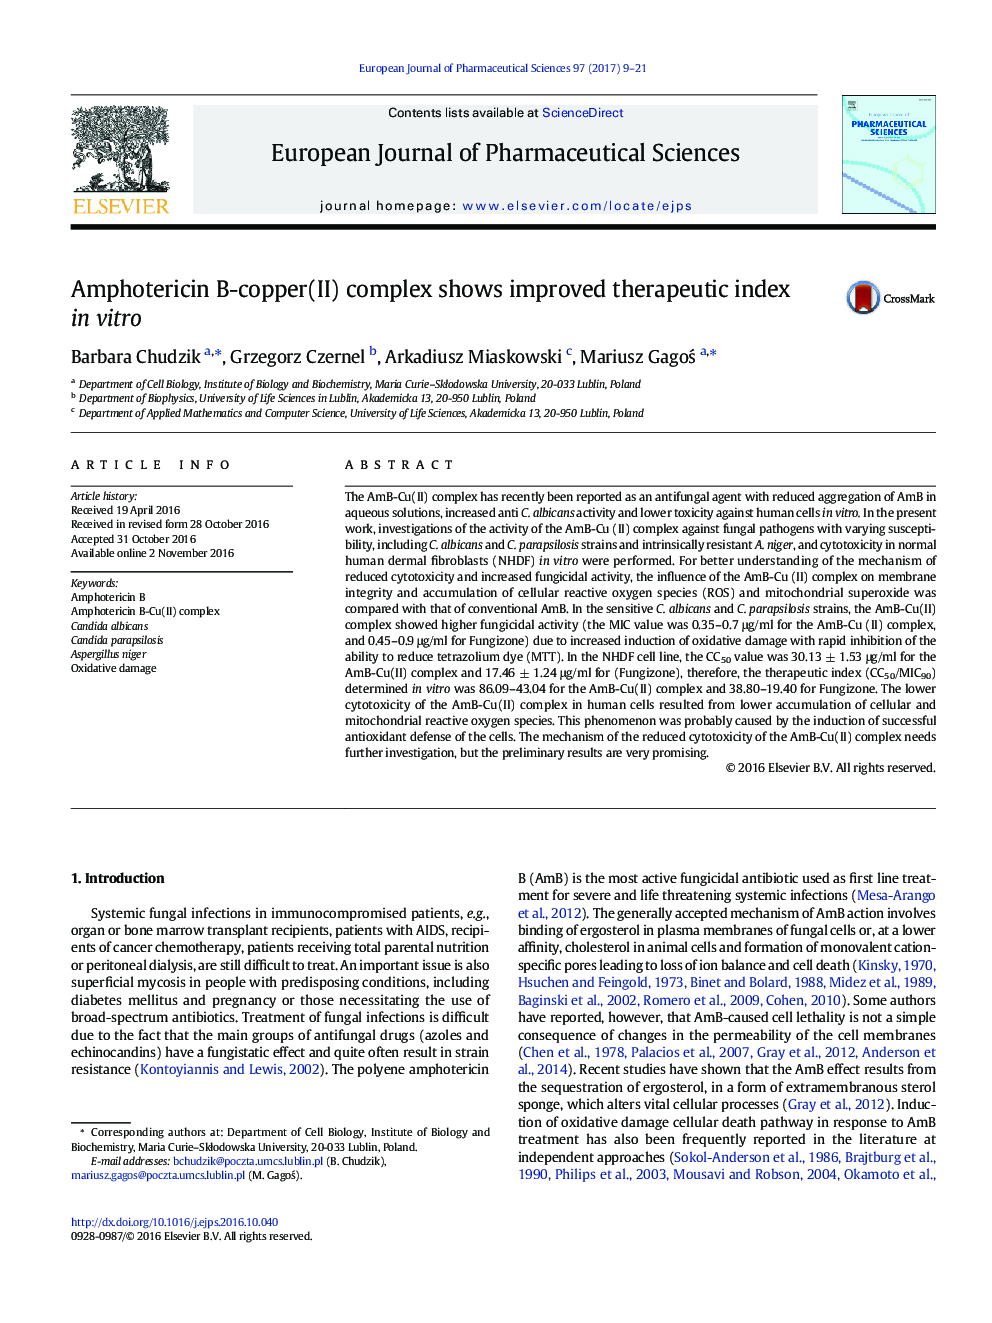 Amphotericin B-copper(II) complex shows improved therapeutic index in vitro